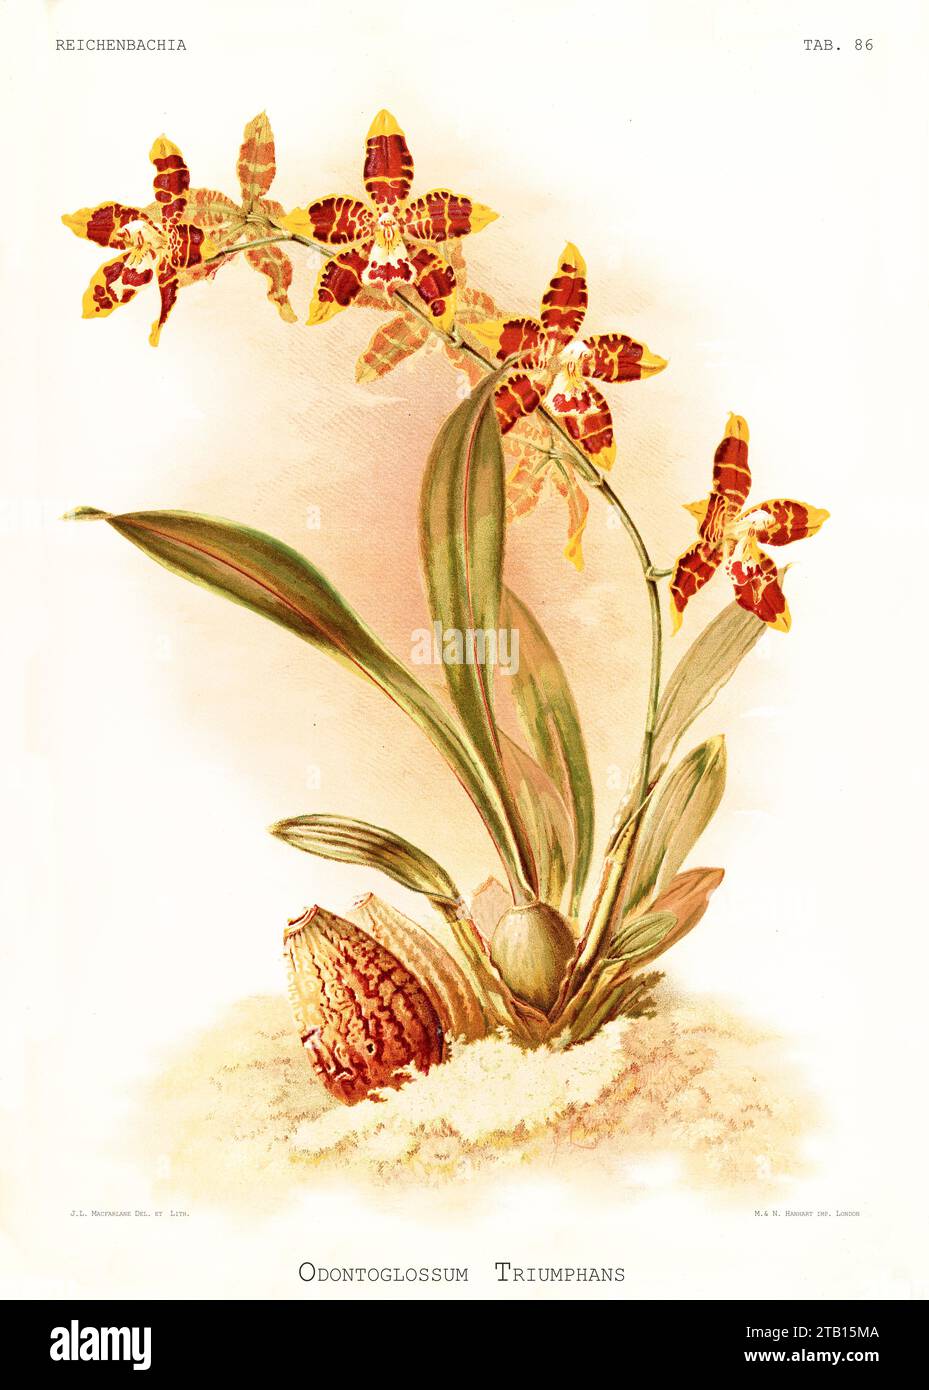 Illustration ancienne du spectaculaire Odontoglossum (Odontoglossum spectatissimum). Reichenbachia, de F. Sander. St. Albans, Royaume-Uni, 1888 - 1894 Banque D'Images